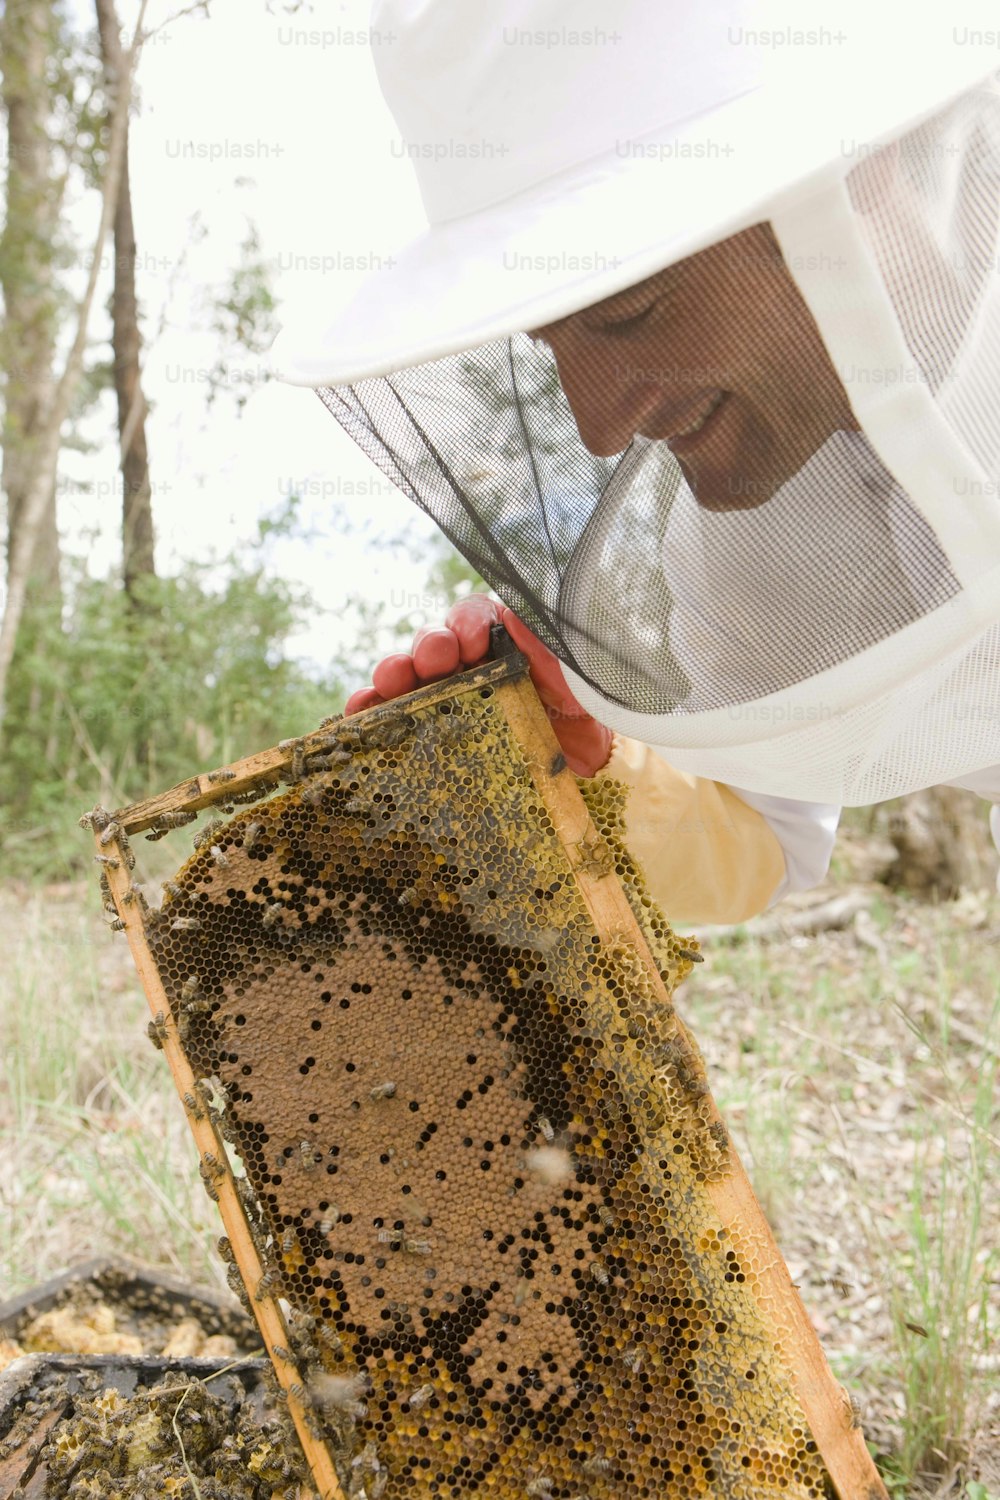 Ein Mann in einem Bienenanzug, der einen Bienenstock hält